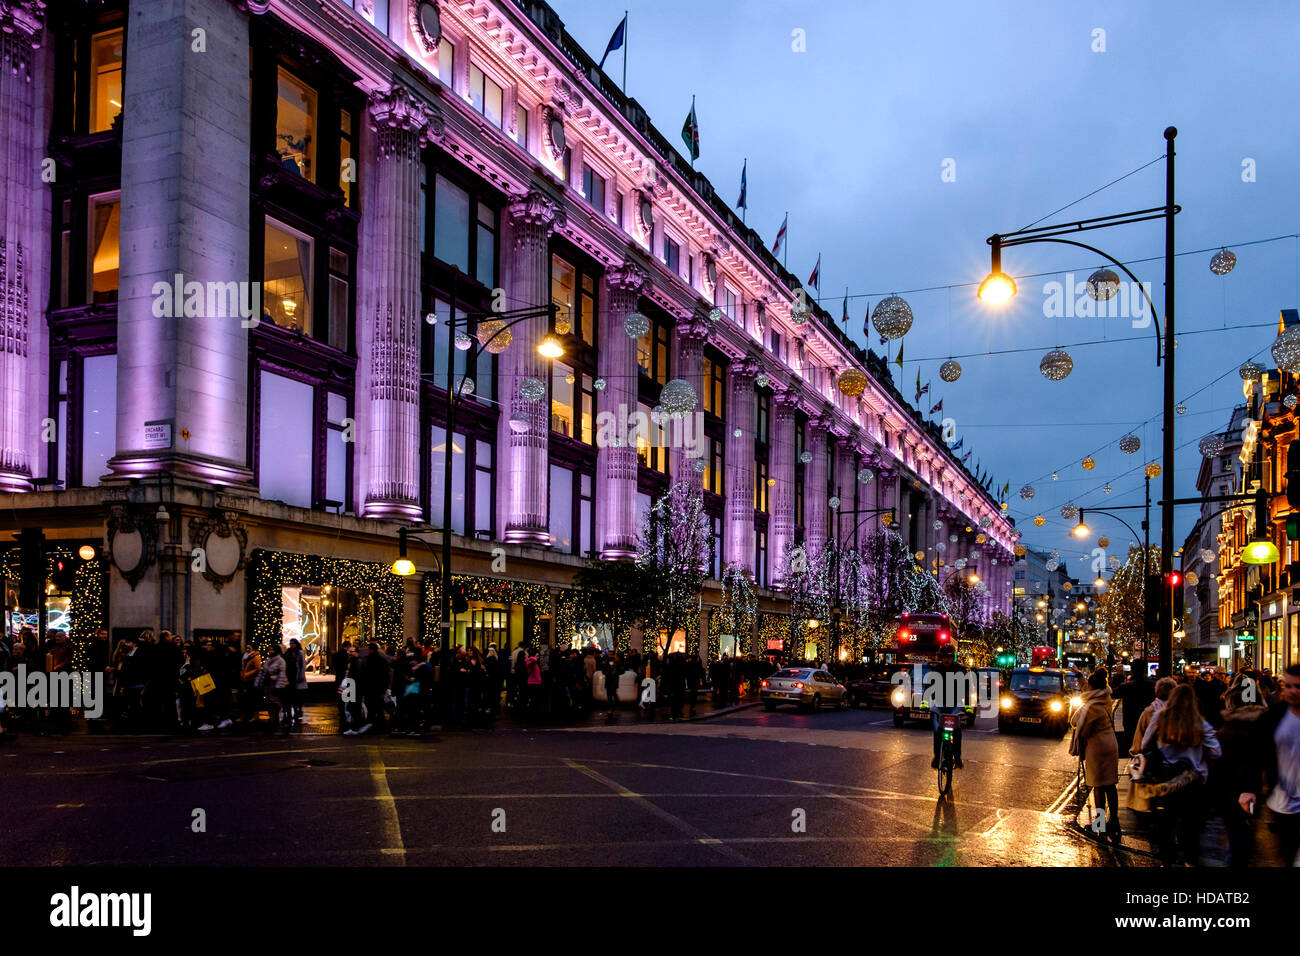 Londres, Reino Unido. 10 dic, 2016. Compras de Navidad en West End en Londres el 10/12/2016 por Oxford Street , . Selfridges está iluminado en color rosa, reflejándose en la húmedo, ocupado como compradores de Oxford Street y el tráfico pasa. Crédito: Julie Edwards/Alamy Live News Foto de stock